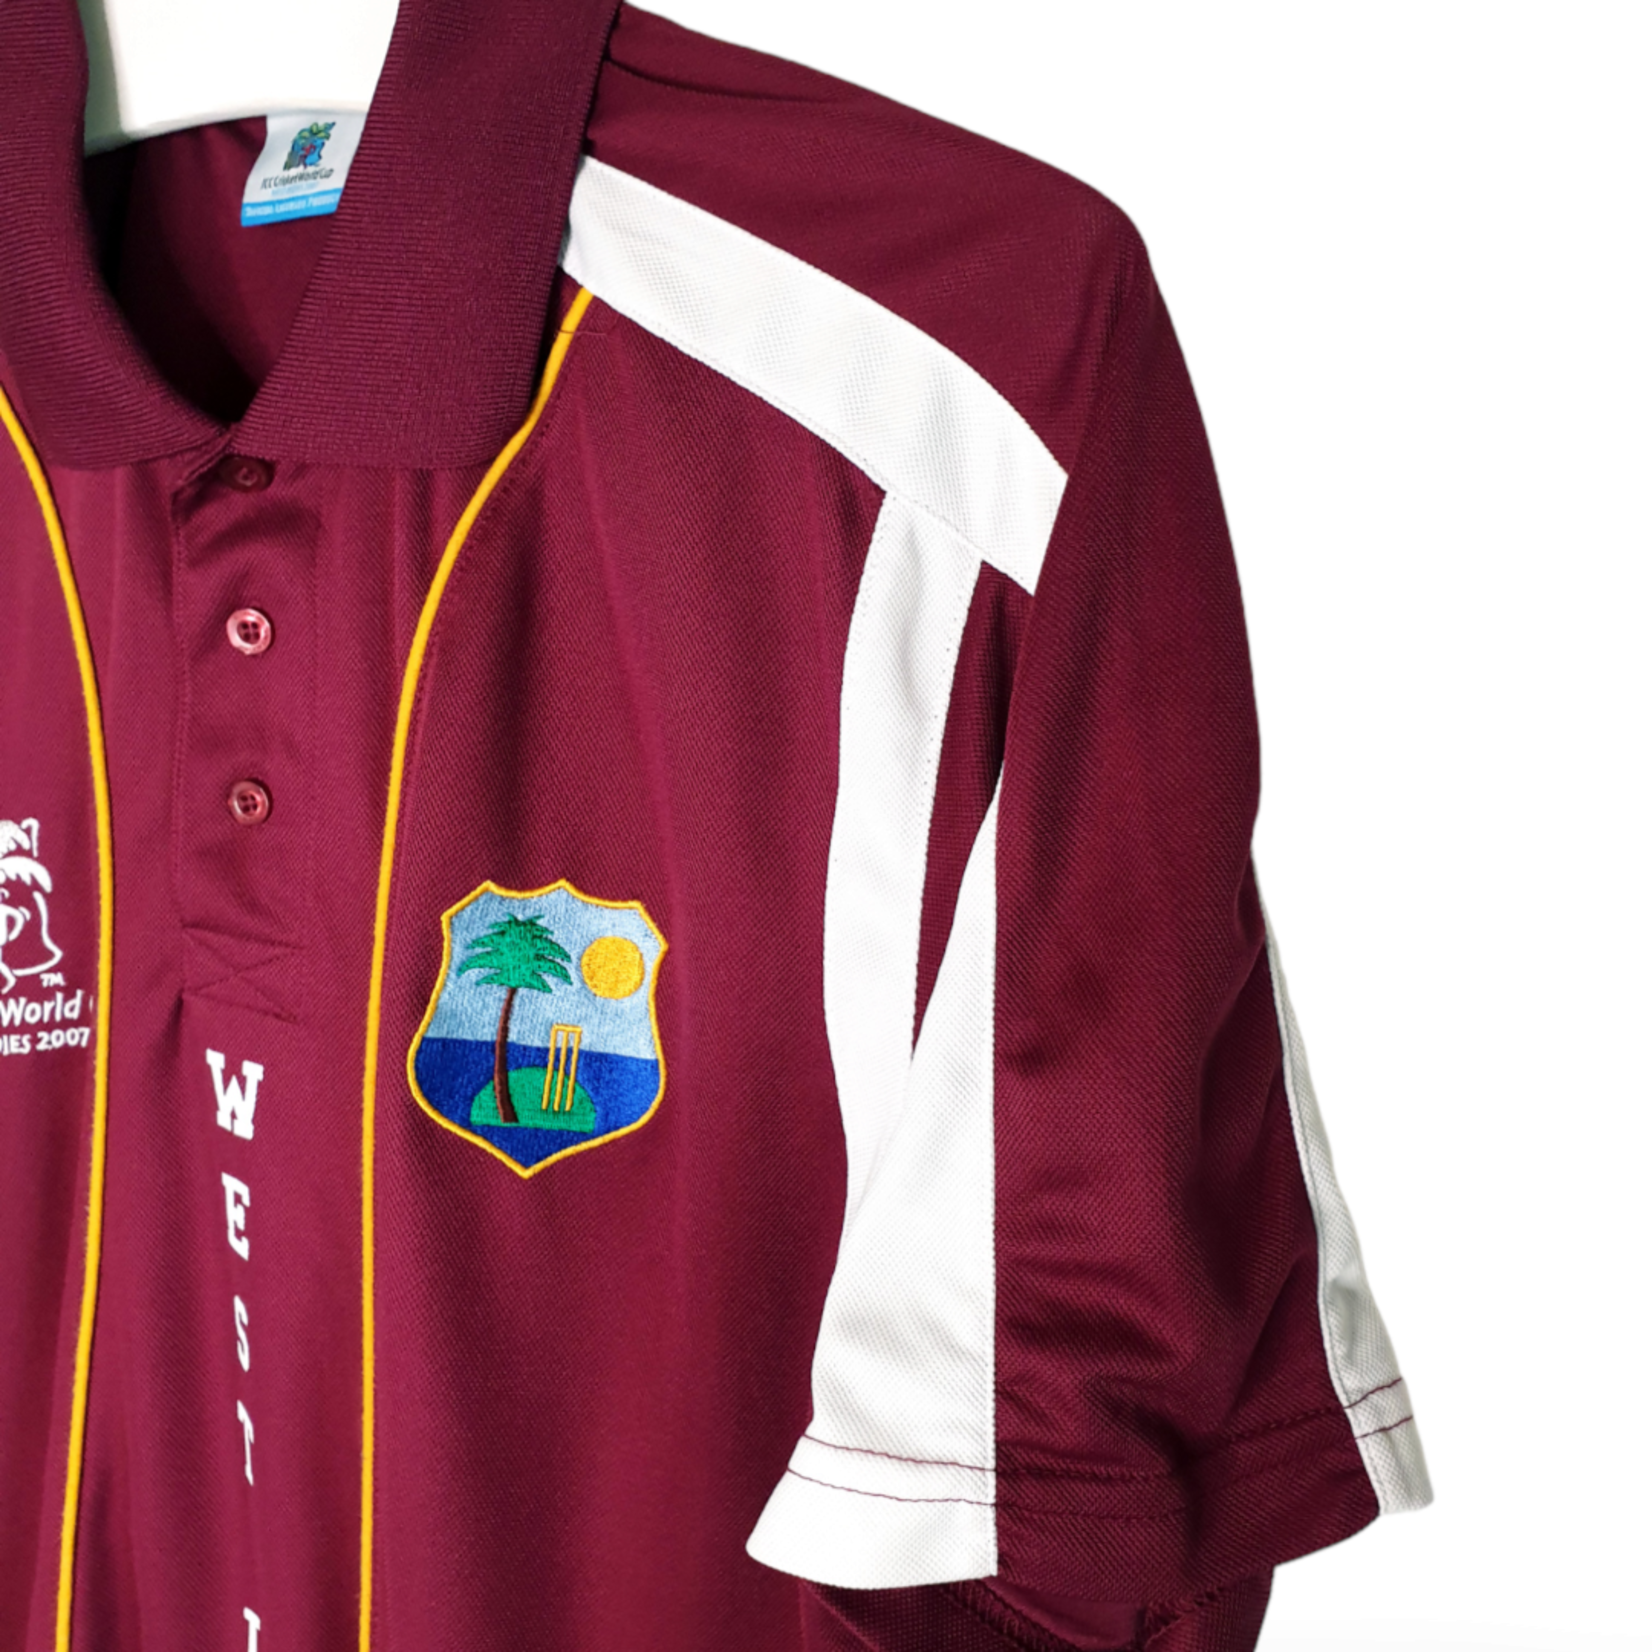 ICC Origineel ICC vintage cricket shirt West Indies 2007